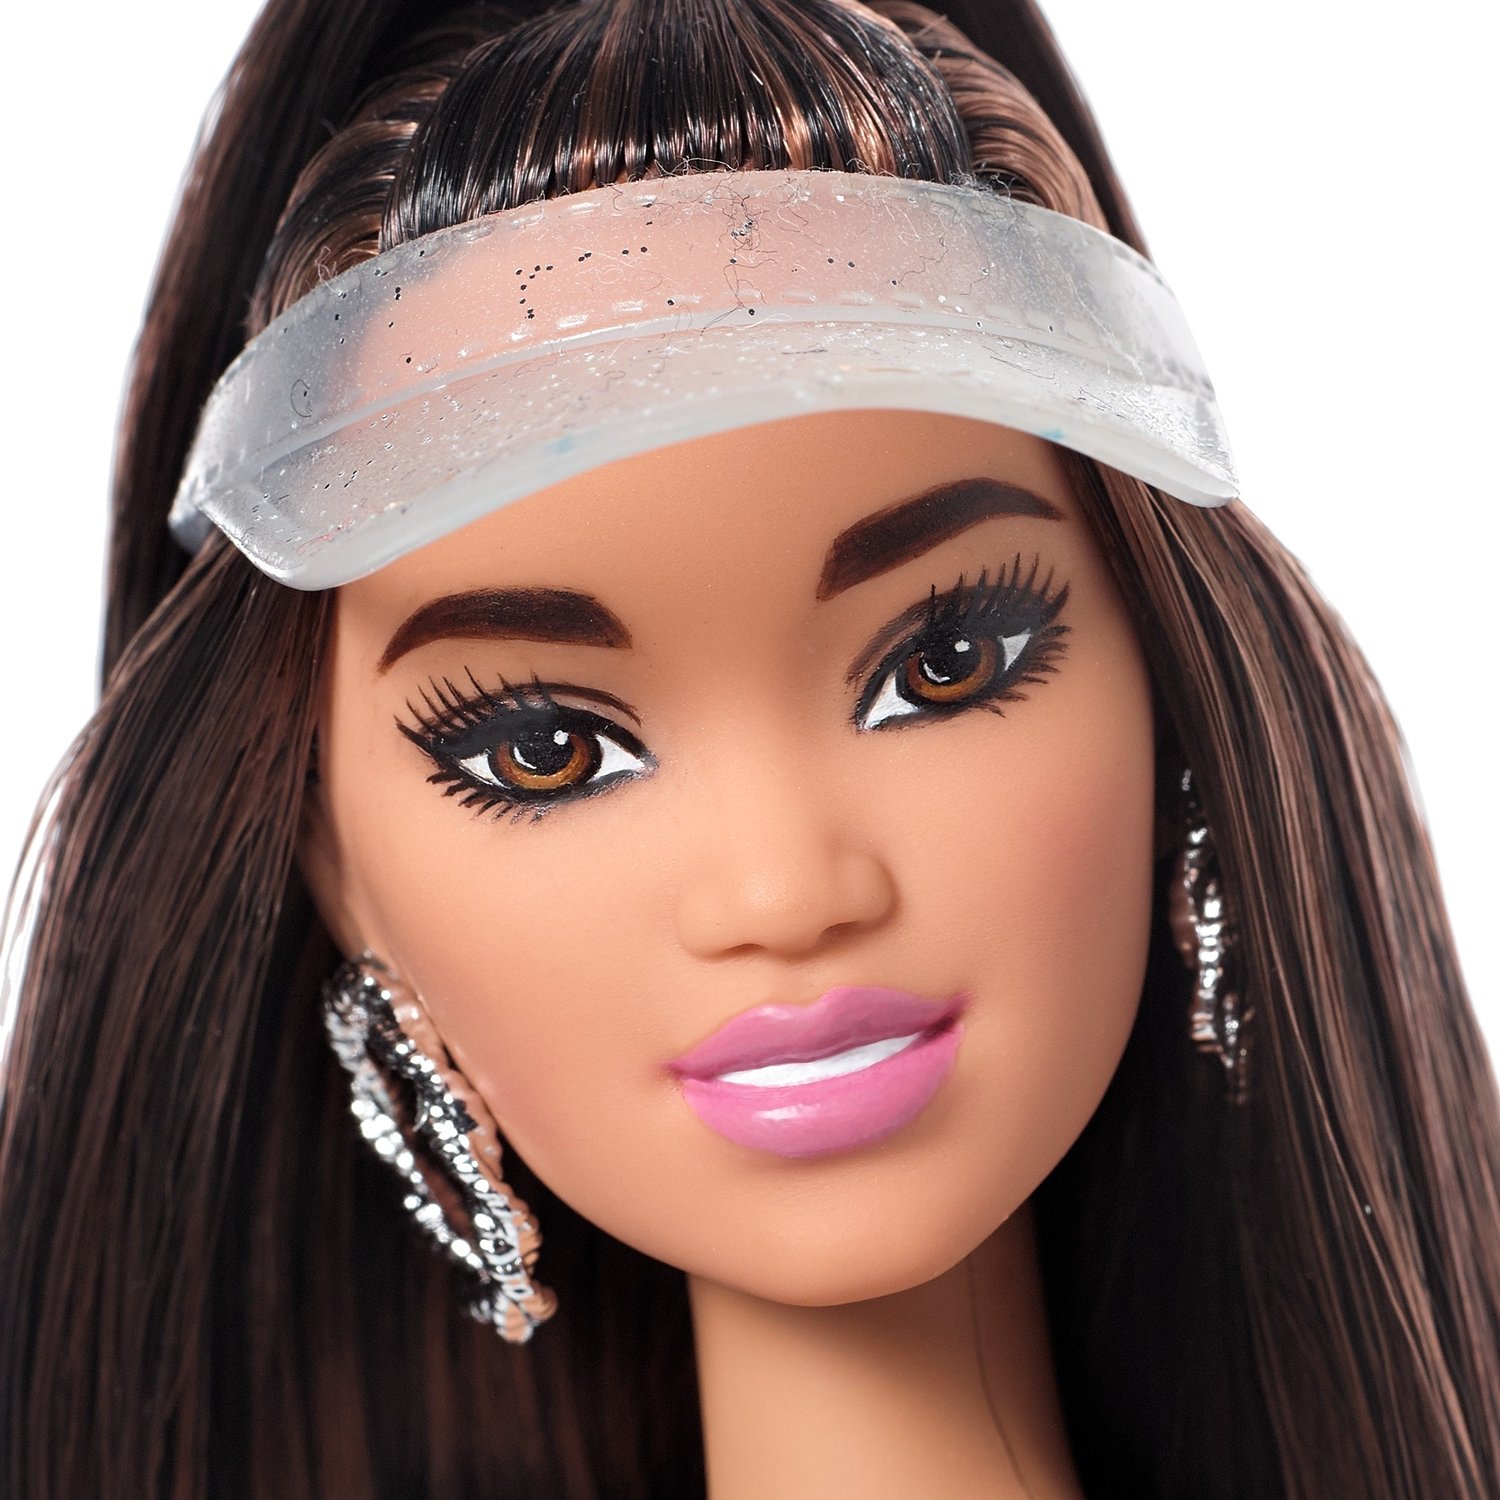 Кукла Barbie FJF71 с дополнительным комплектом одежды, 29 см